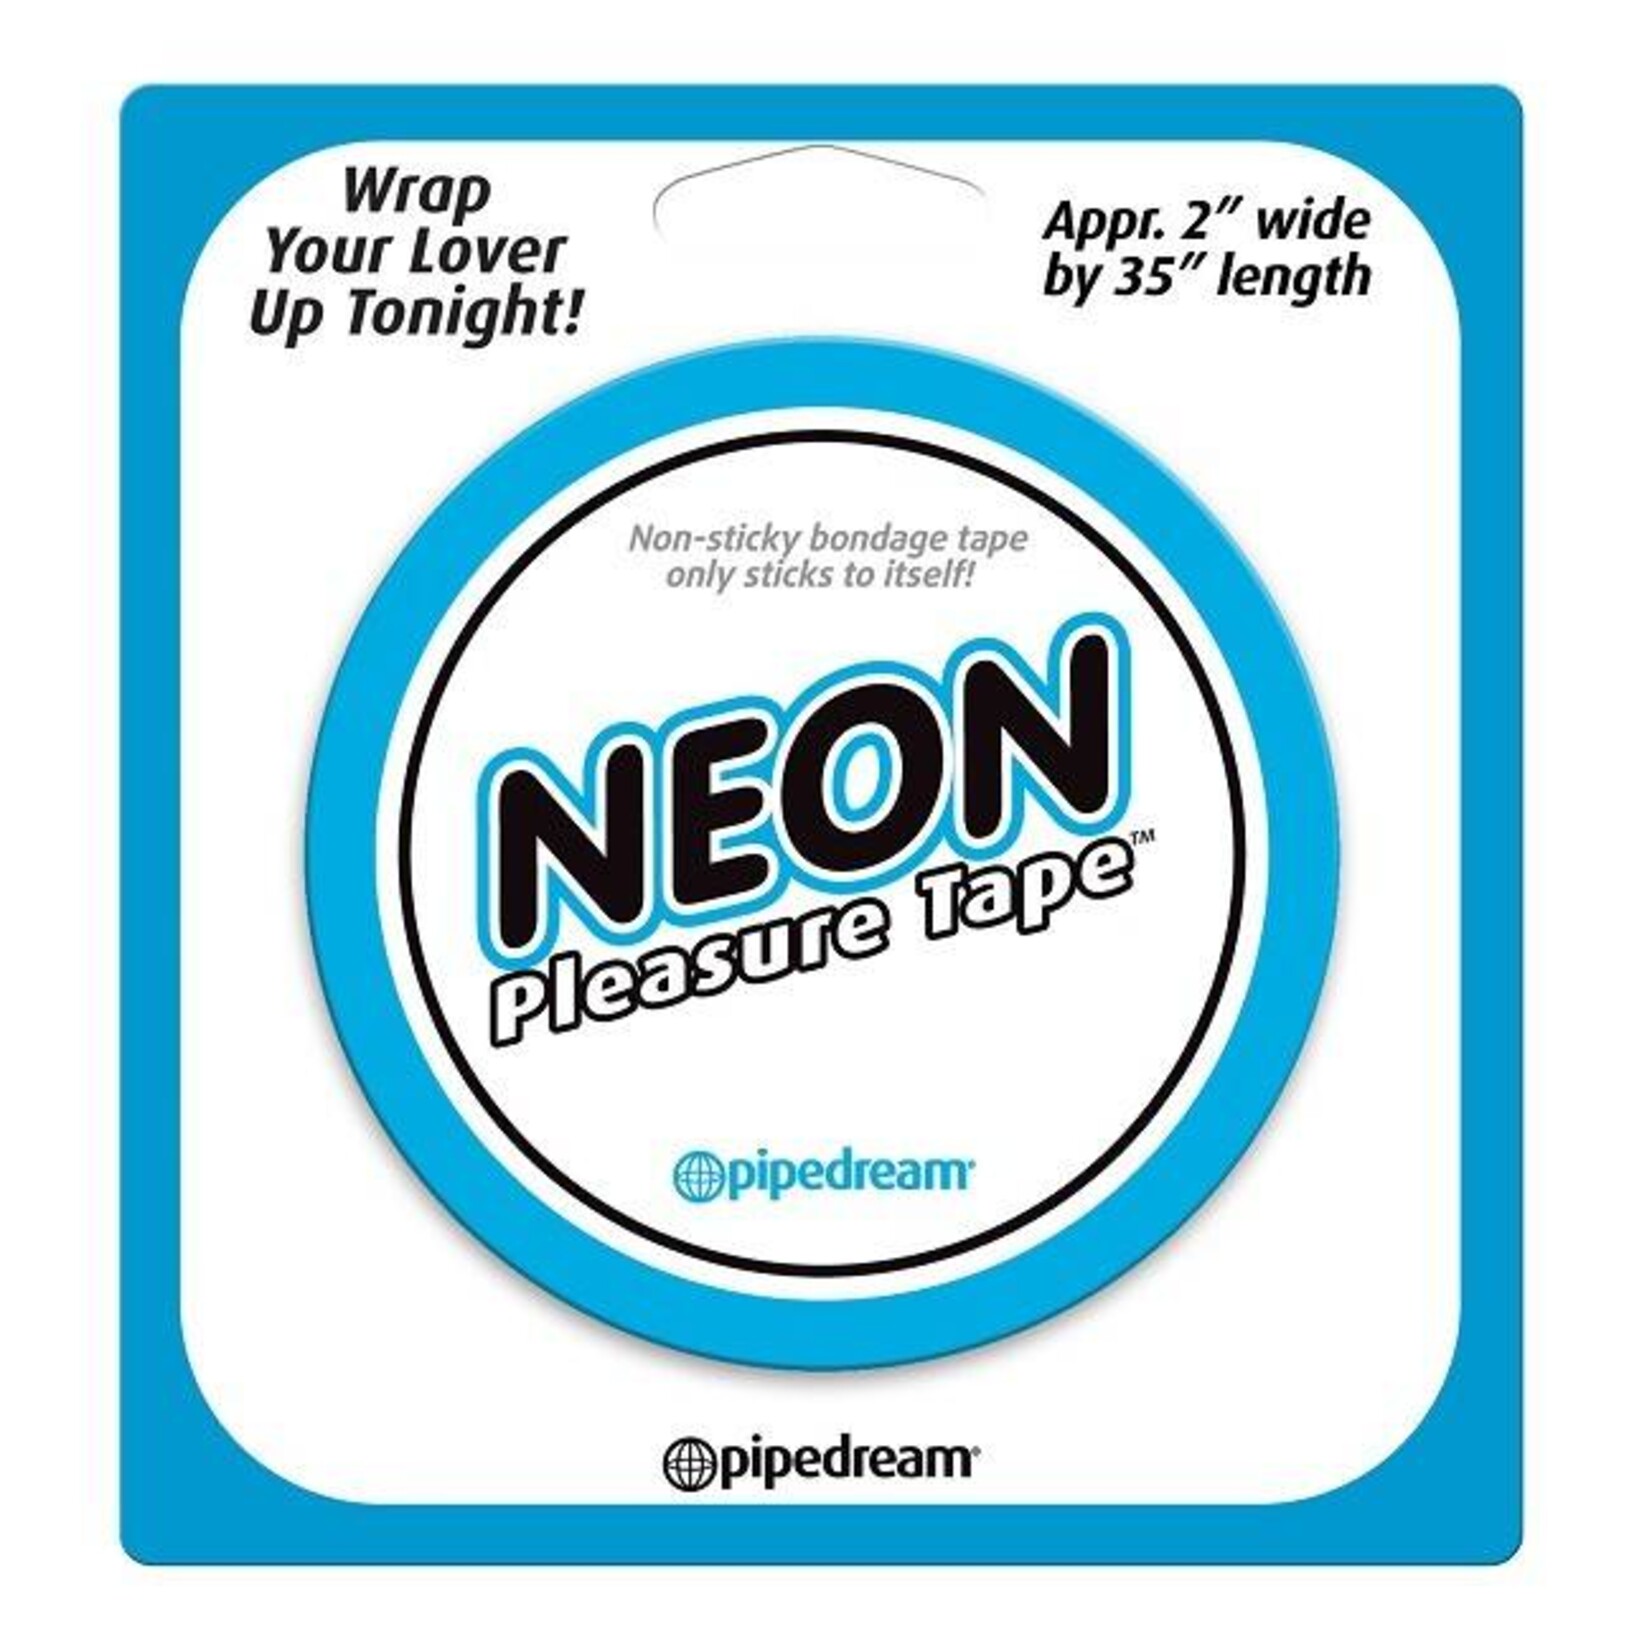 Pipedream Neon Pleasure Tape